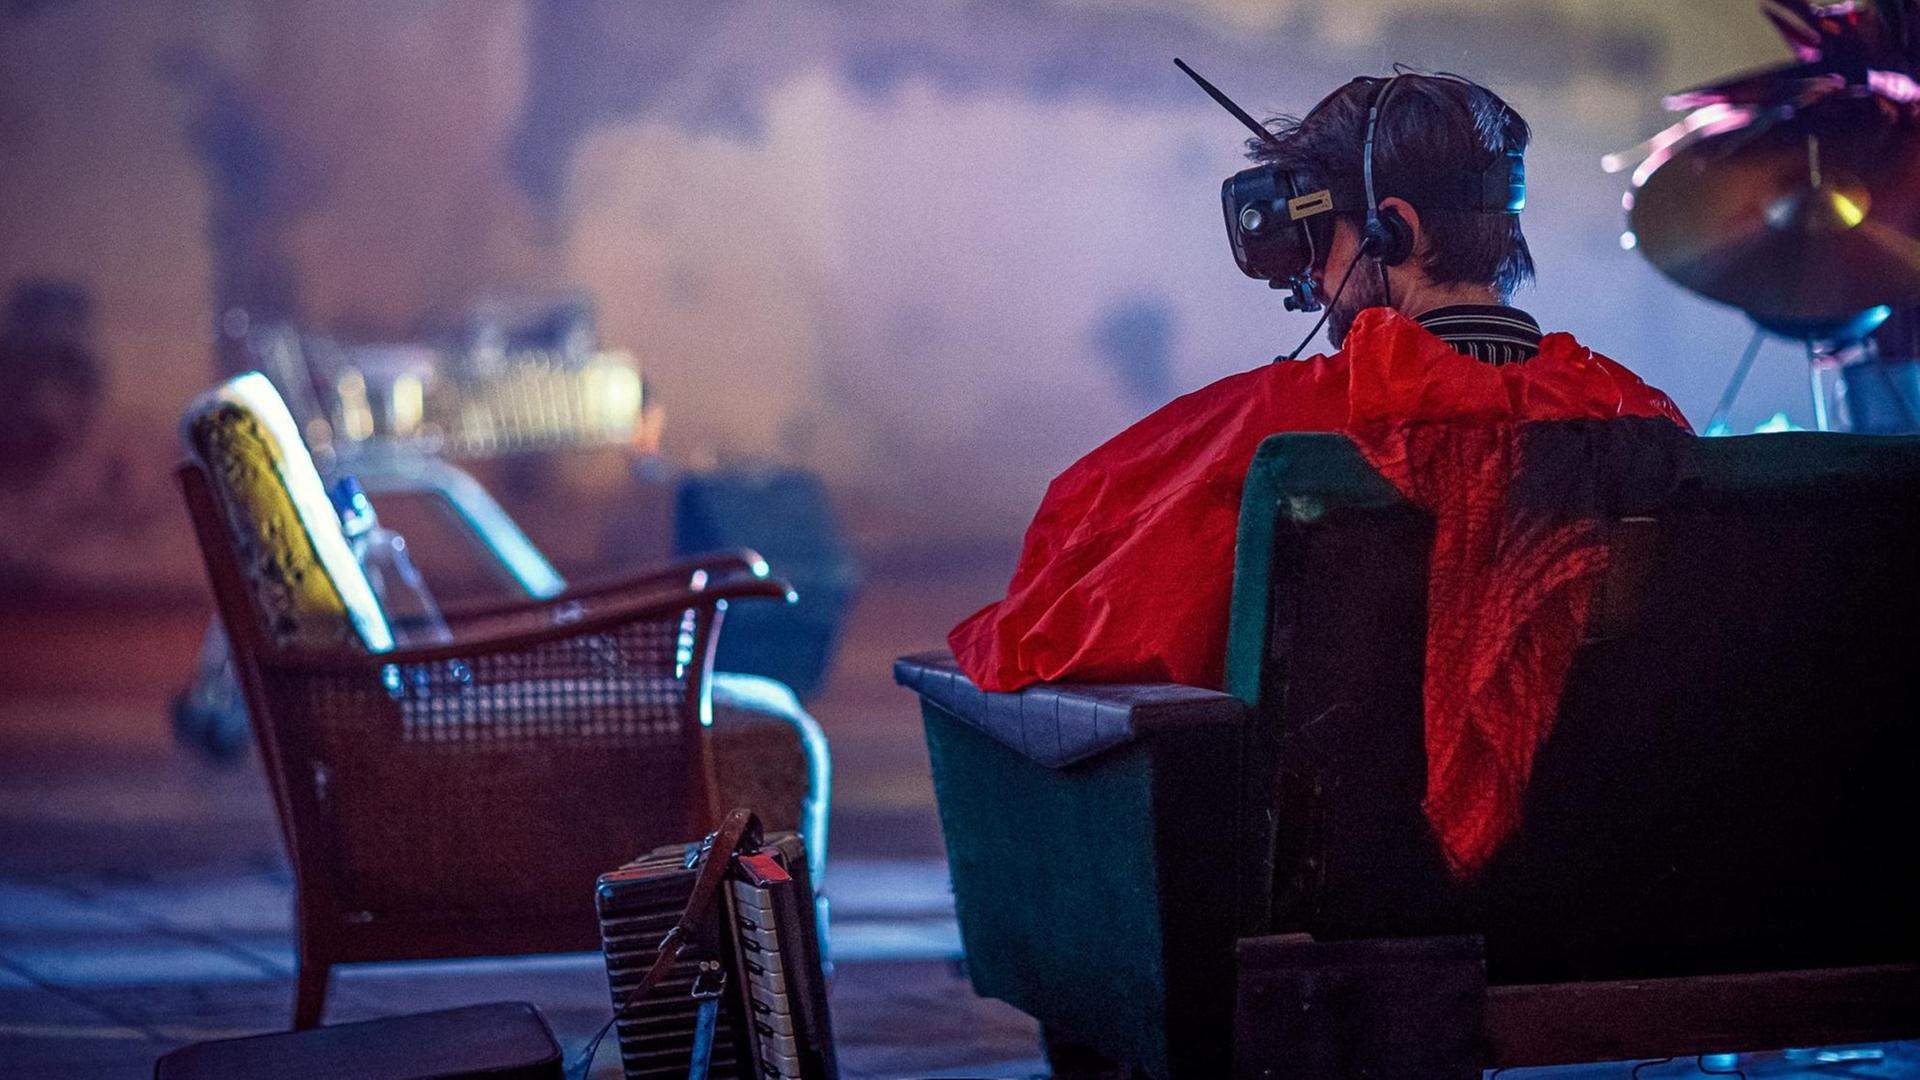 Ein Mann ist von hinten zu sehen, wie er auf einen Sessel sitzt, eine VR-Brille samt Antenne auf dem Kopf trägt und ein auffallend rotes Oberteil. Neben ihm auf dem Boden steht ein Akkordeon.